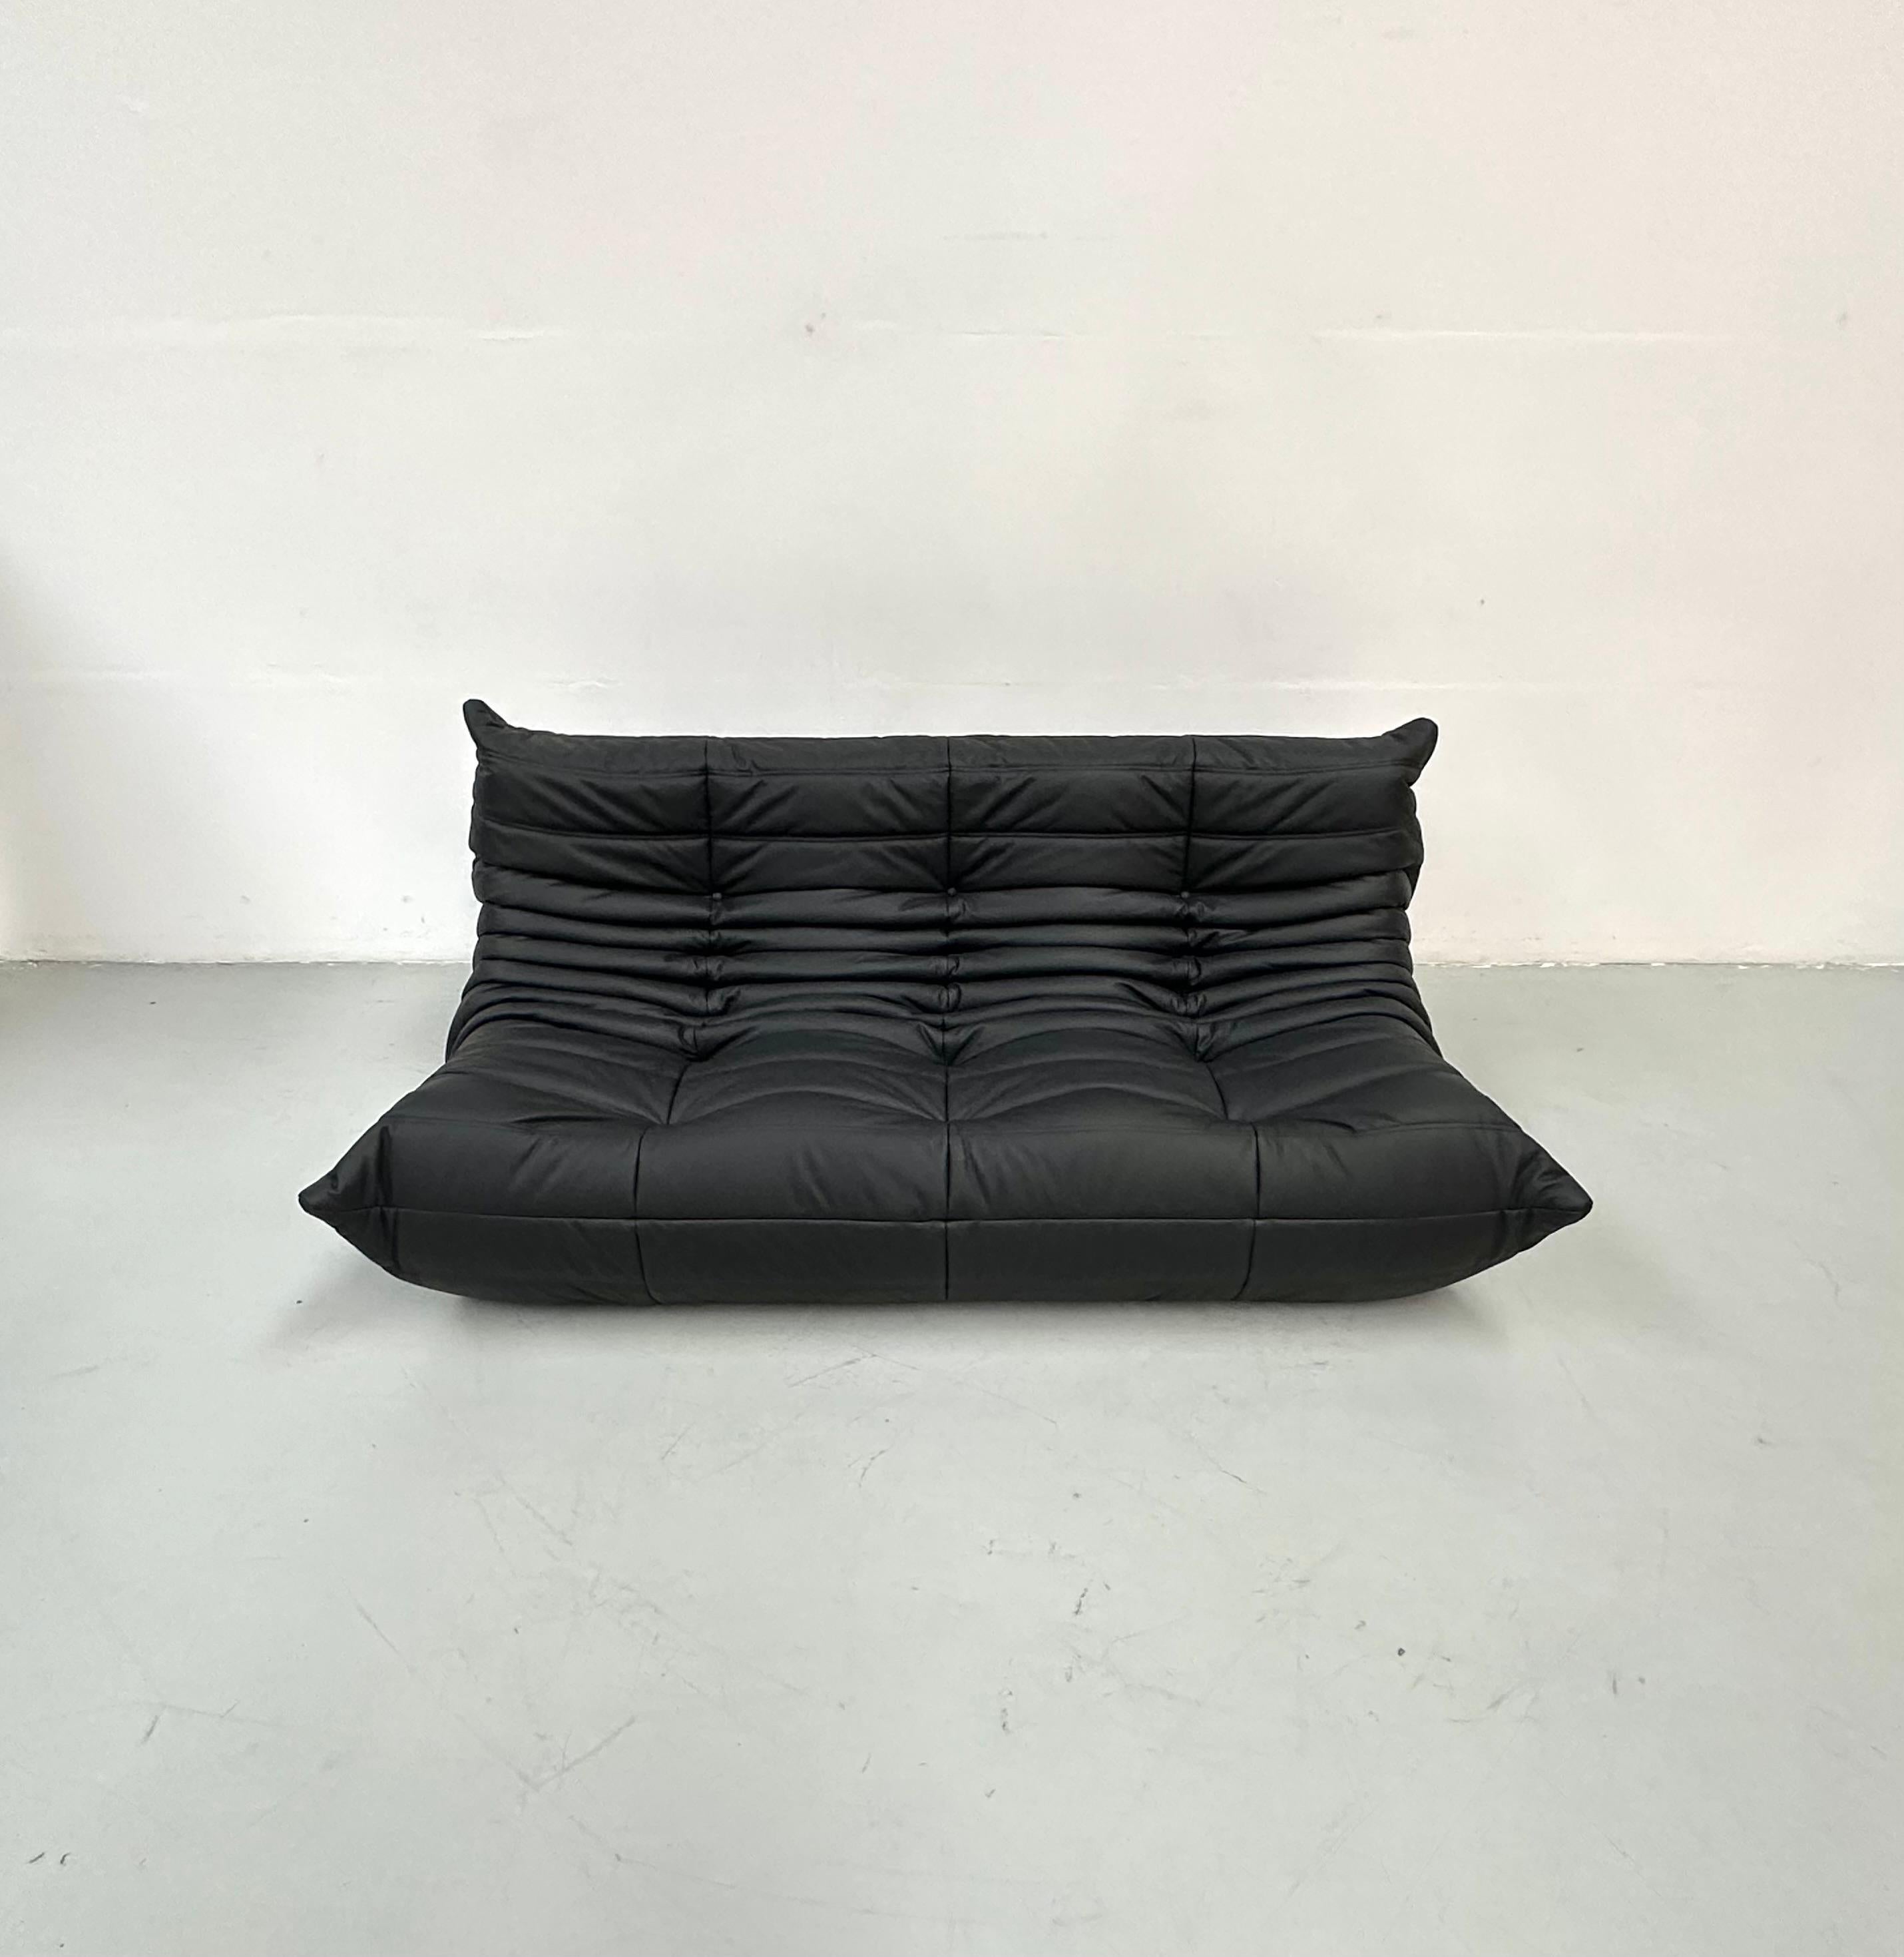 Der Togo wurde 1973 von Michel Ducaroy für Ligne Roset entworfen. Es ist das erste Sofa/Sessel, das nur aus Schaumstoff und Leder besteht. Die Togo-Kollektion zeichnet sich durch ein ergonomisches Design mit Polyätherschaum-Konstruktion und